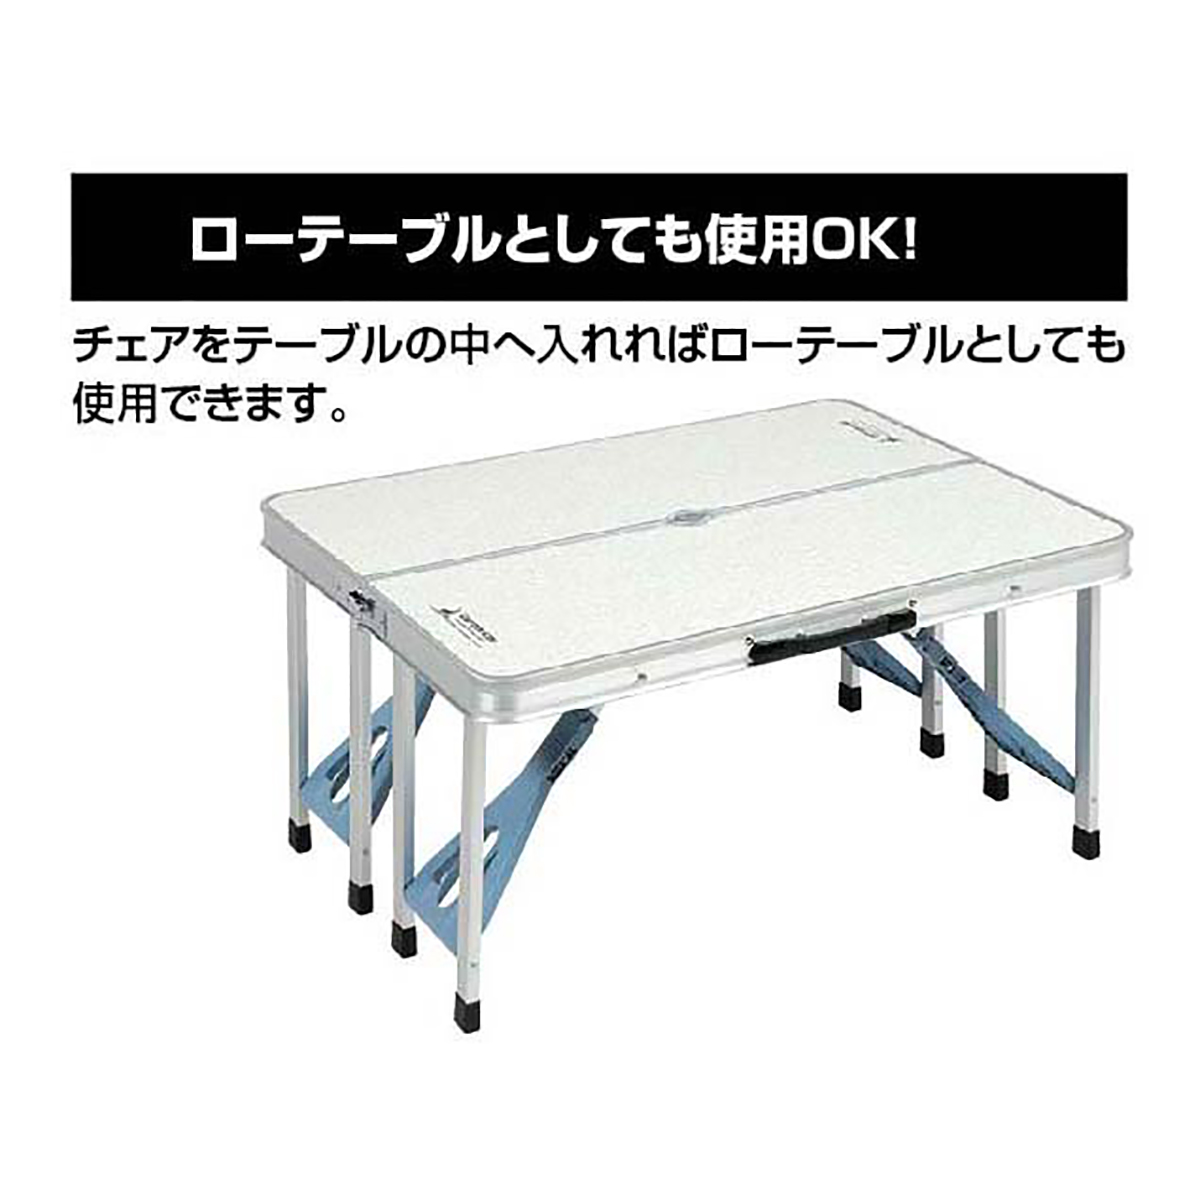 ラフォーレ DXアルミピクニックテーブル - アウトドア・キャンプ用品 